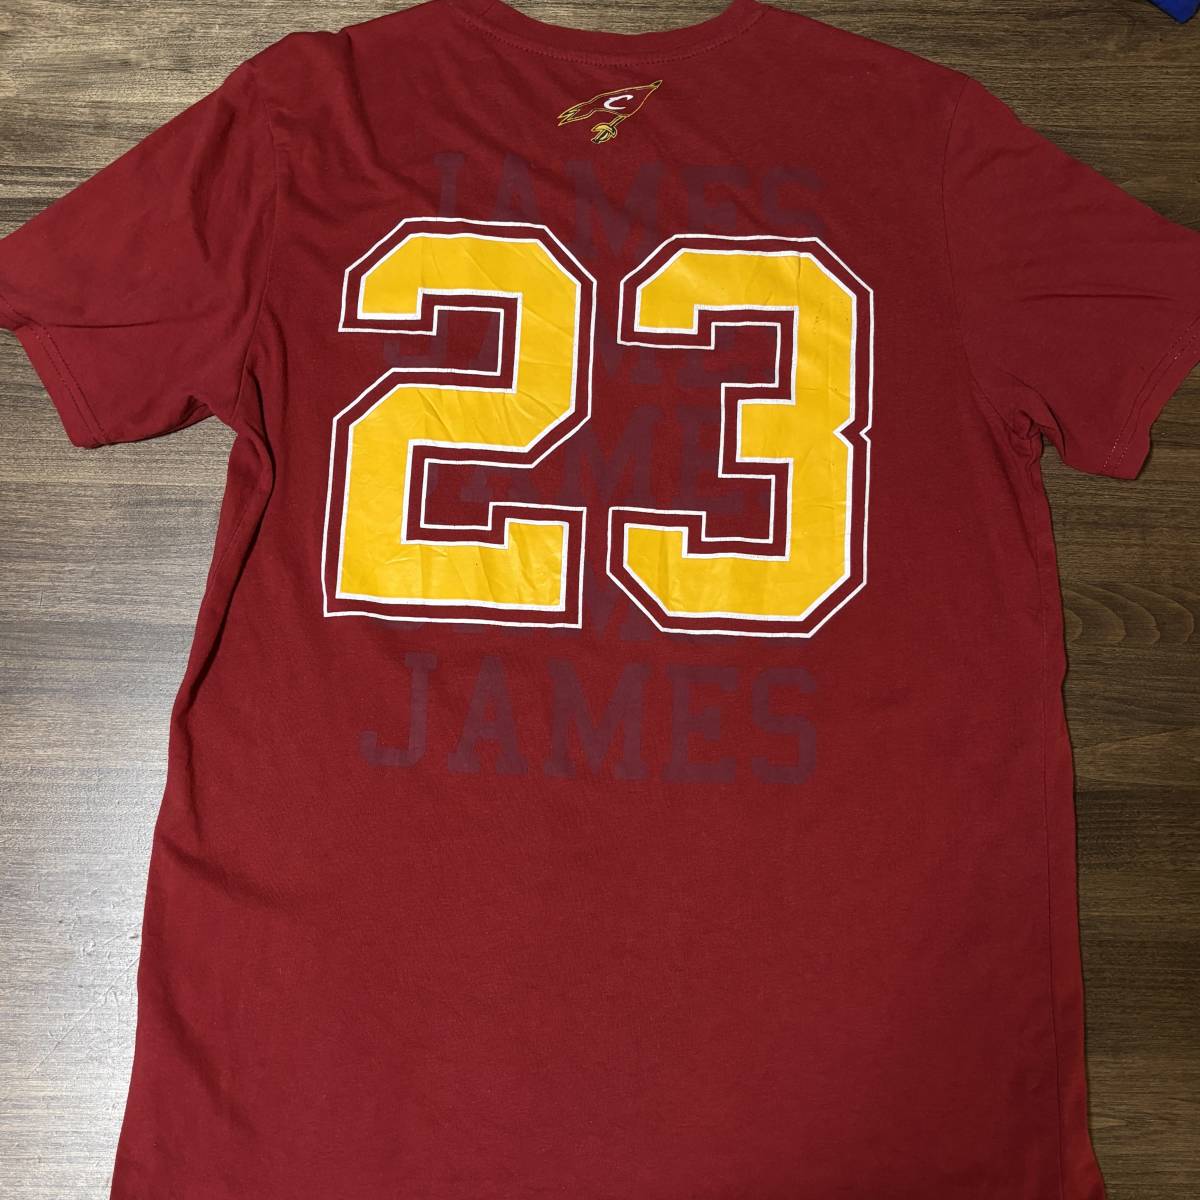 ◎クリーブランド・キャバリアーズ レブロン・ジェームズ Tシャツ Cleveland Cavaliers LeBron James shirtの画像1